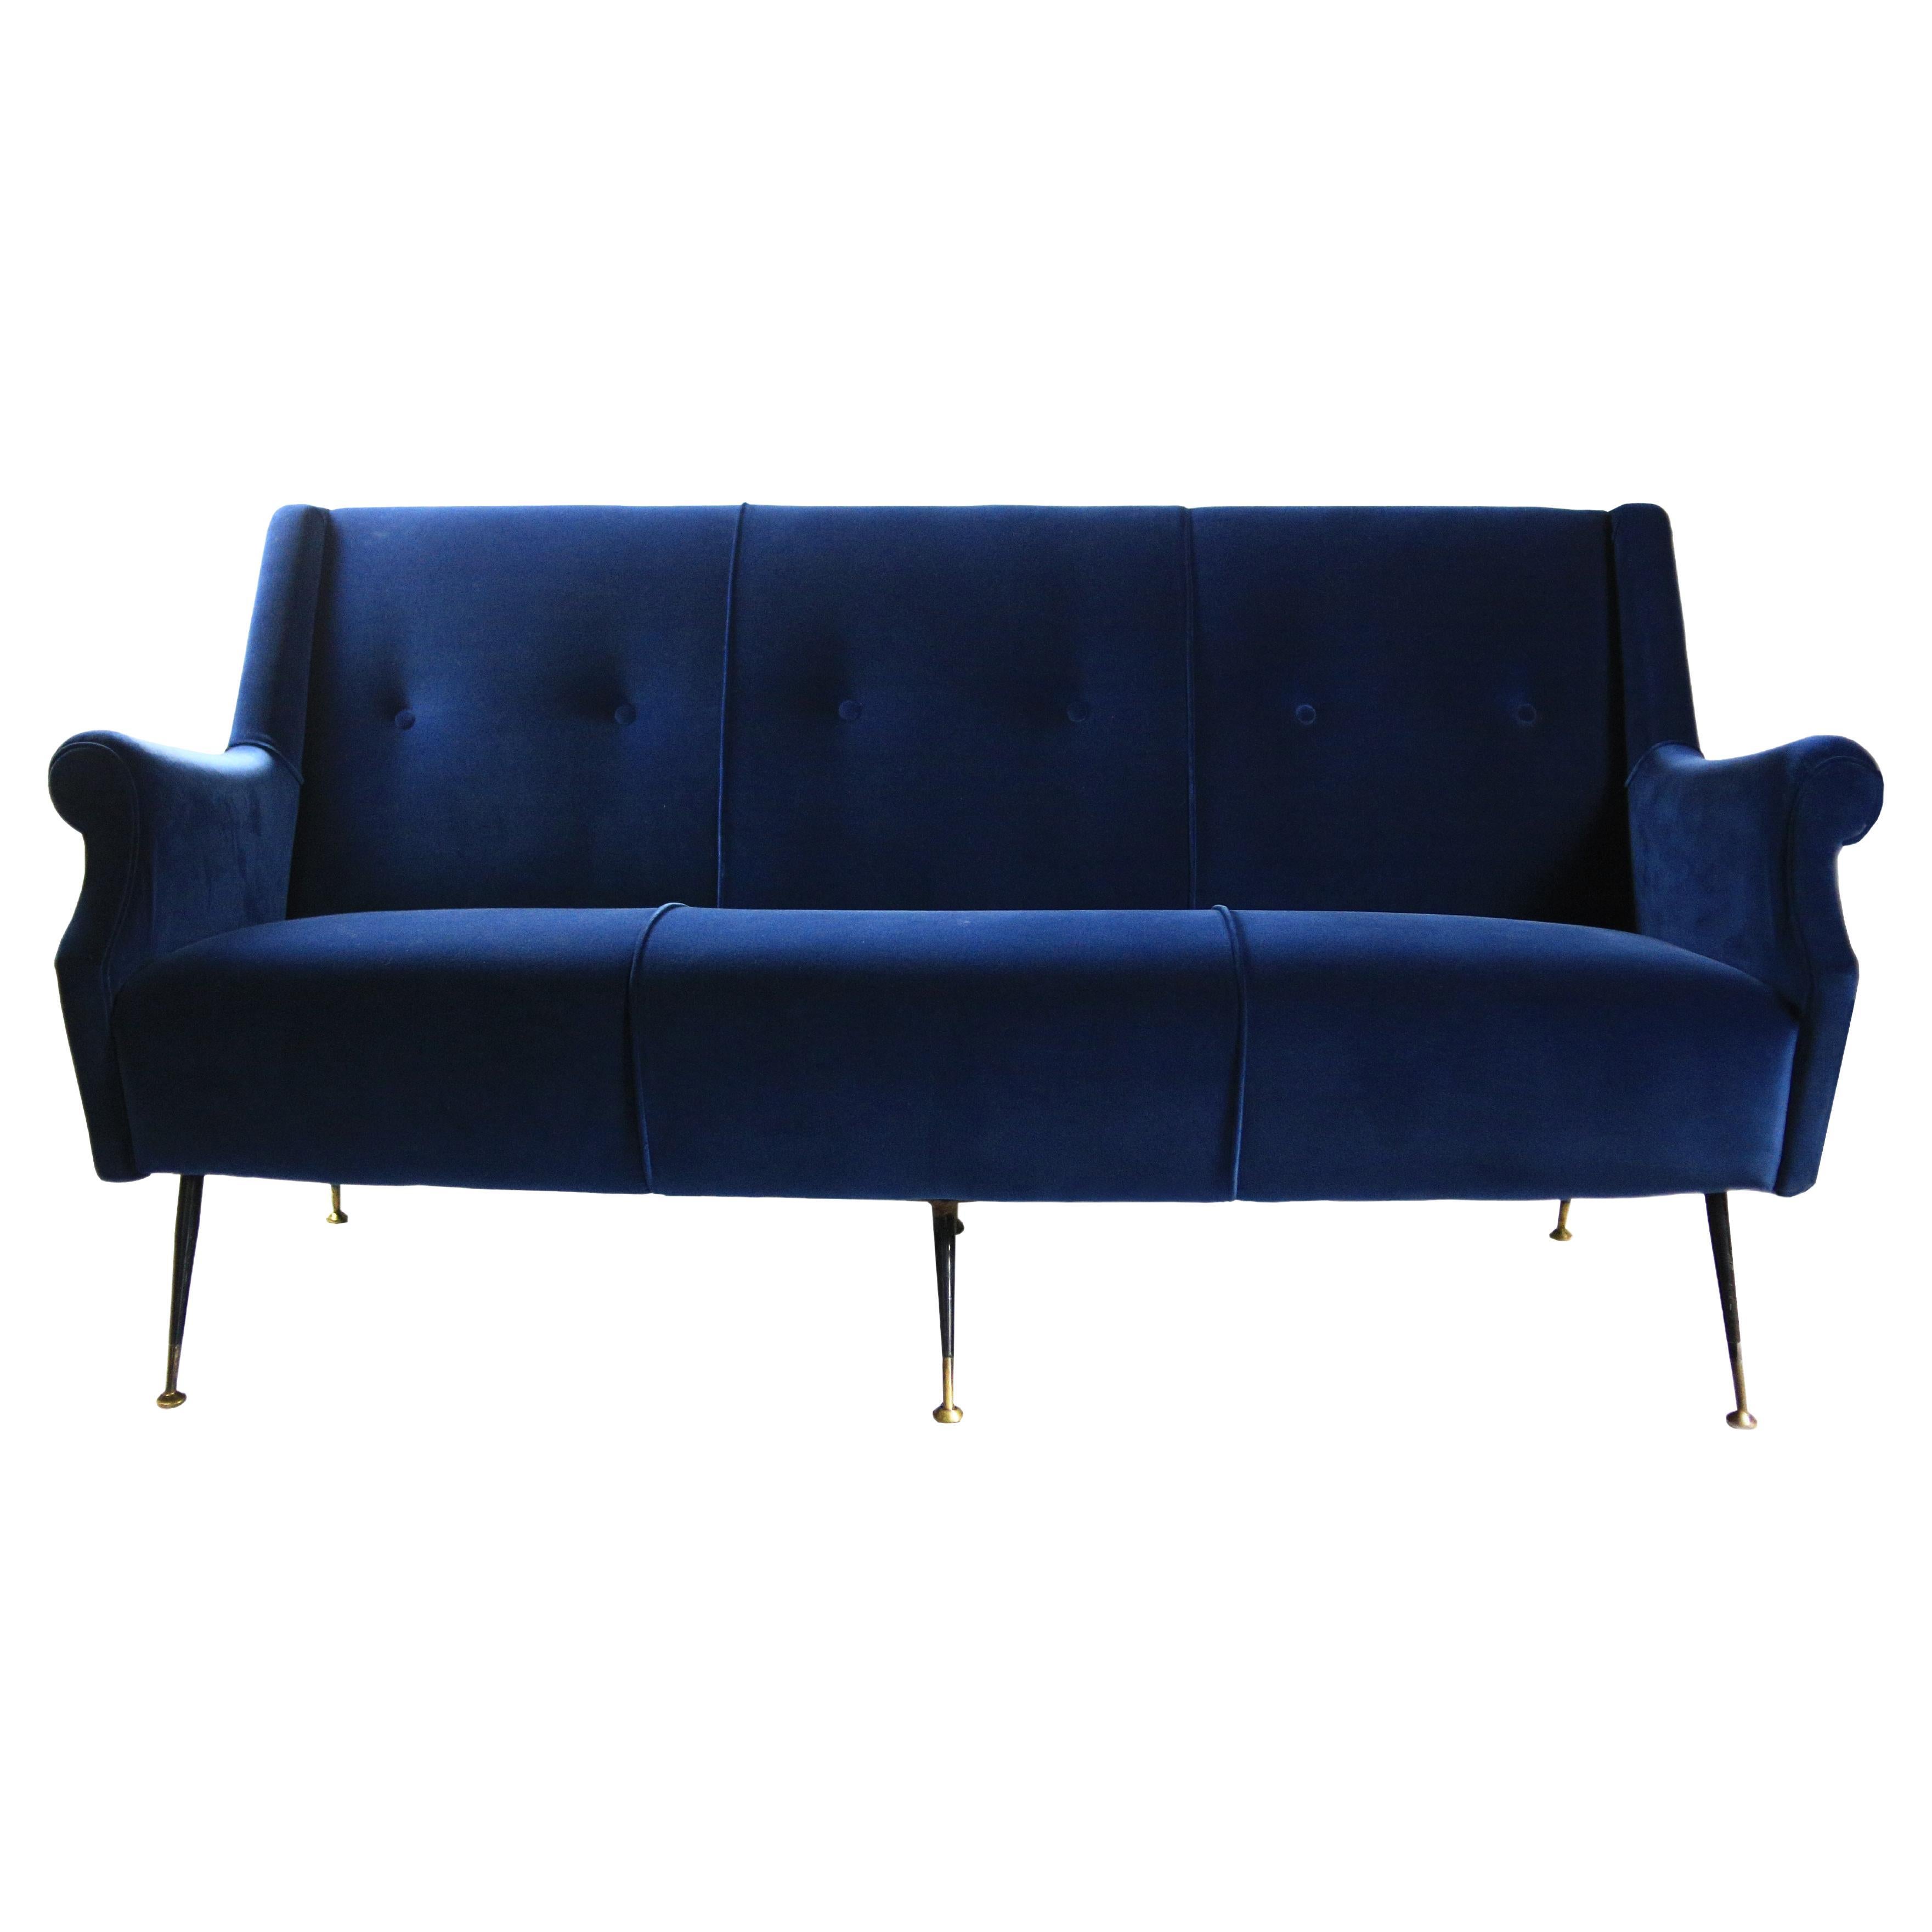 Mid-Century Modern Blue Velvet and Brass Sofa, Italian Design, 1950s For Sale